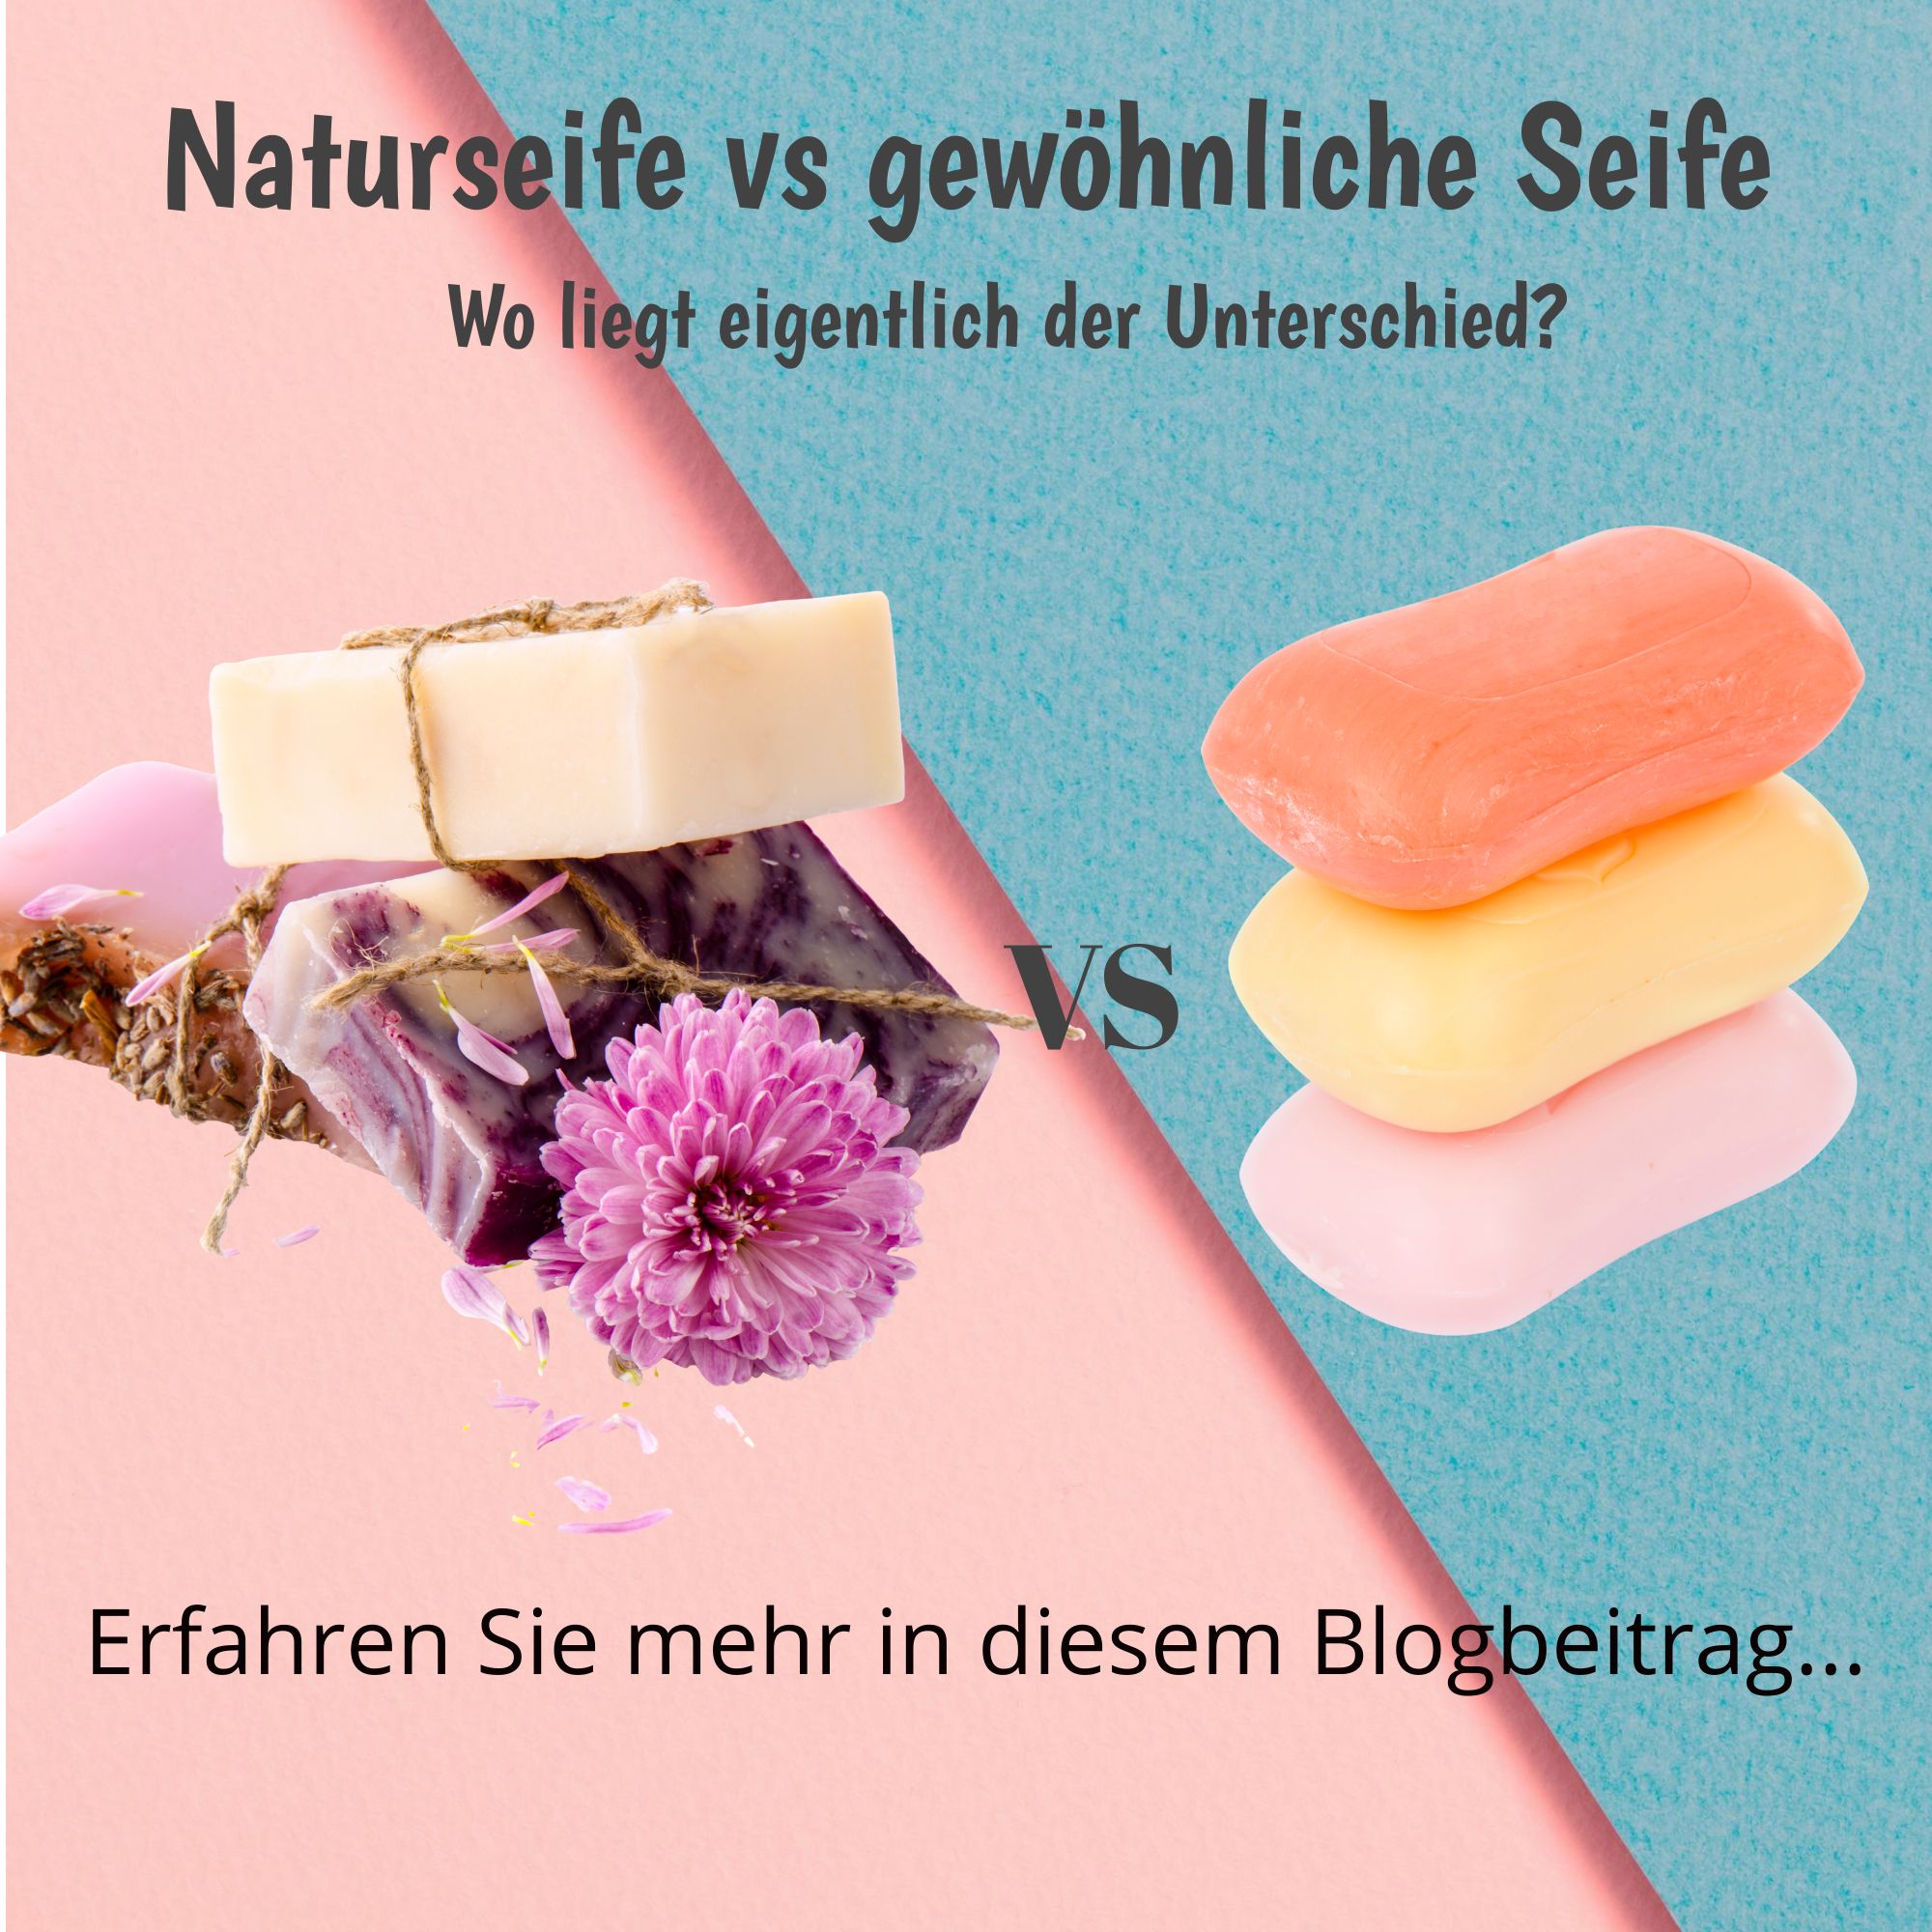 blog naturseifen vs. gewoehnliche seifen mydailysoapopera.de